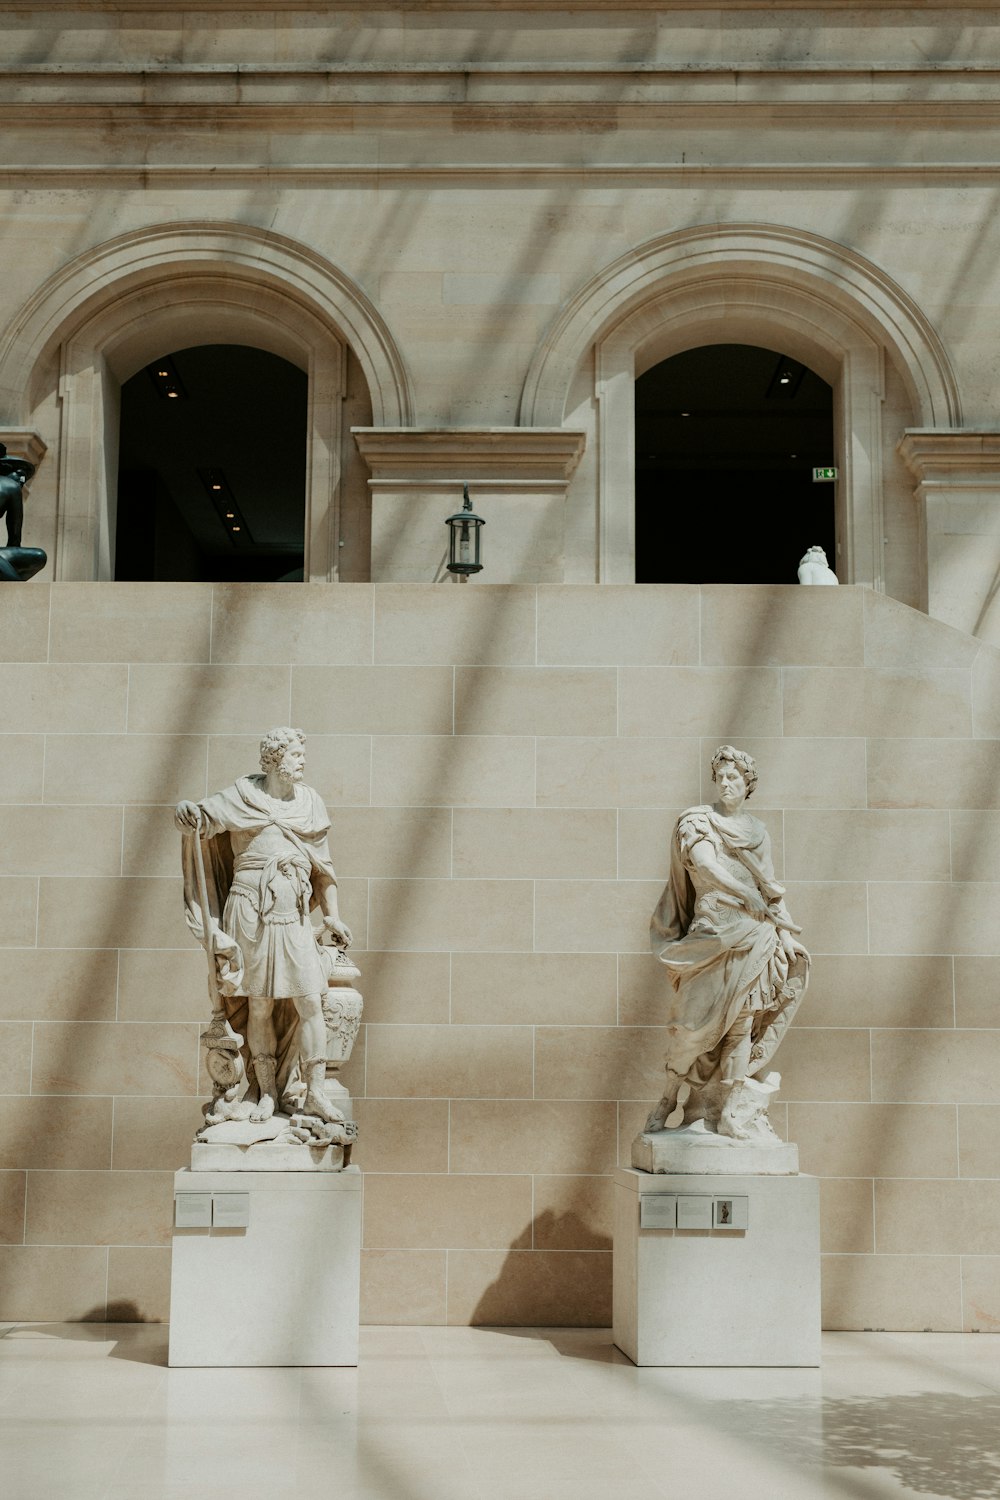 나란히 앉아있는 두 개의 동상